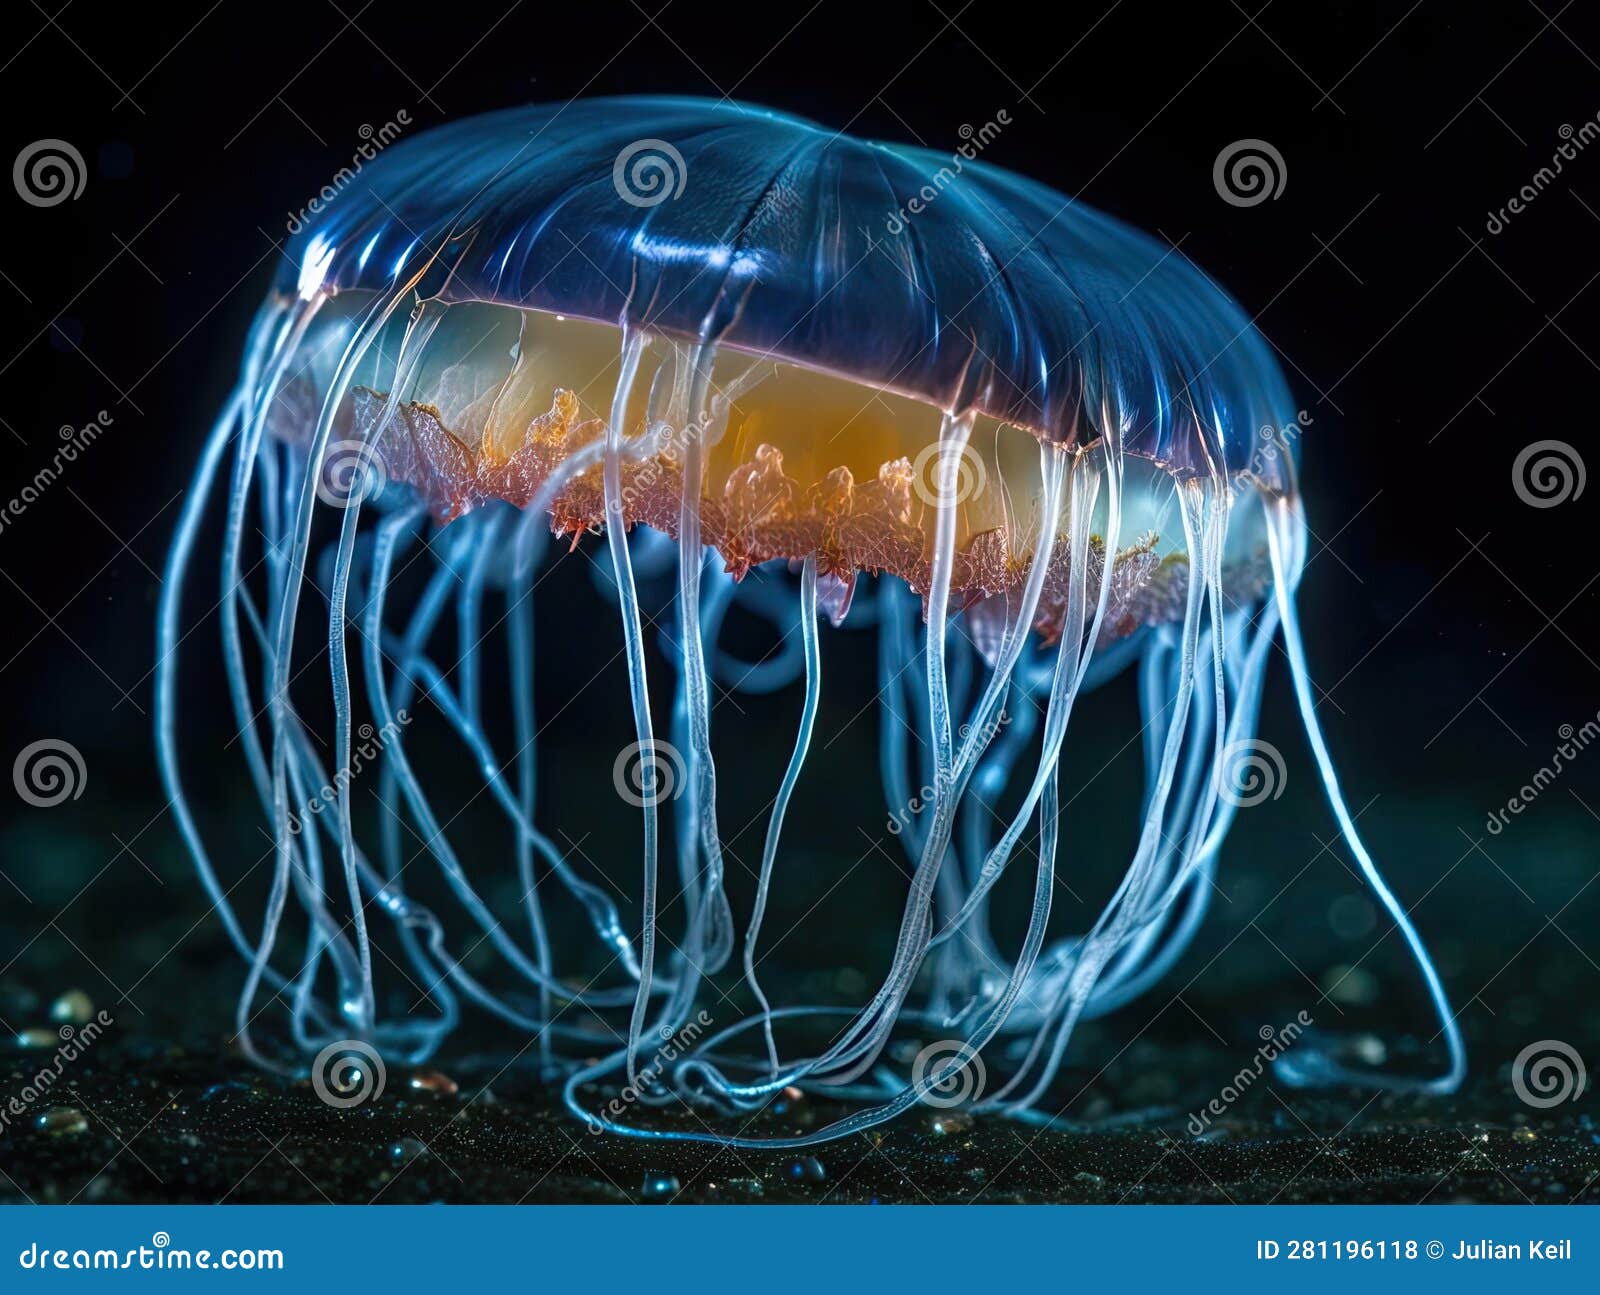 glowing jellyfish in dark void